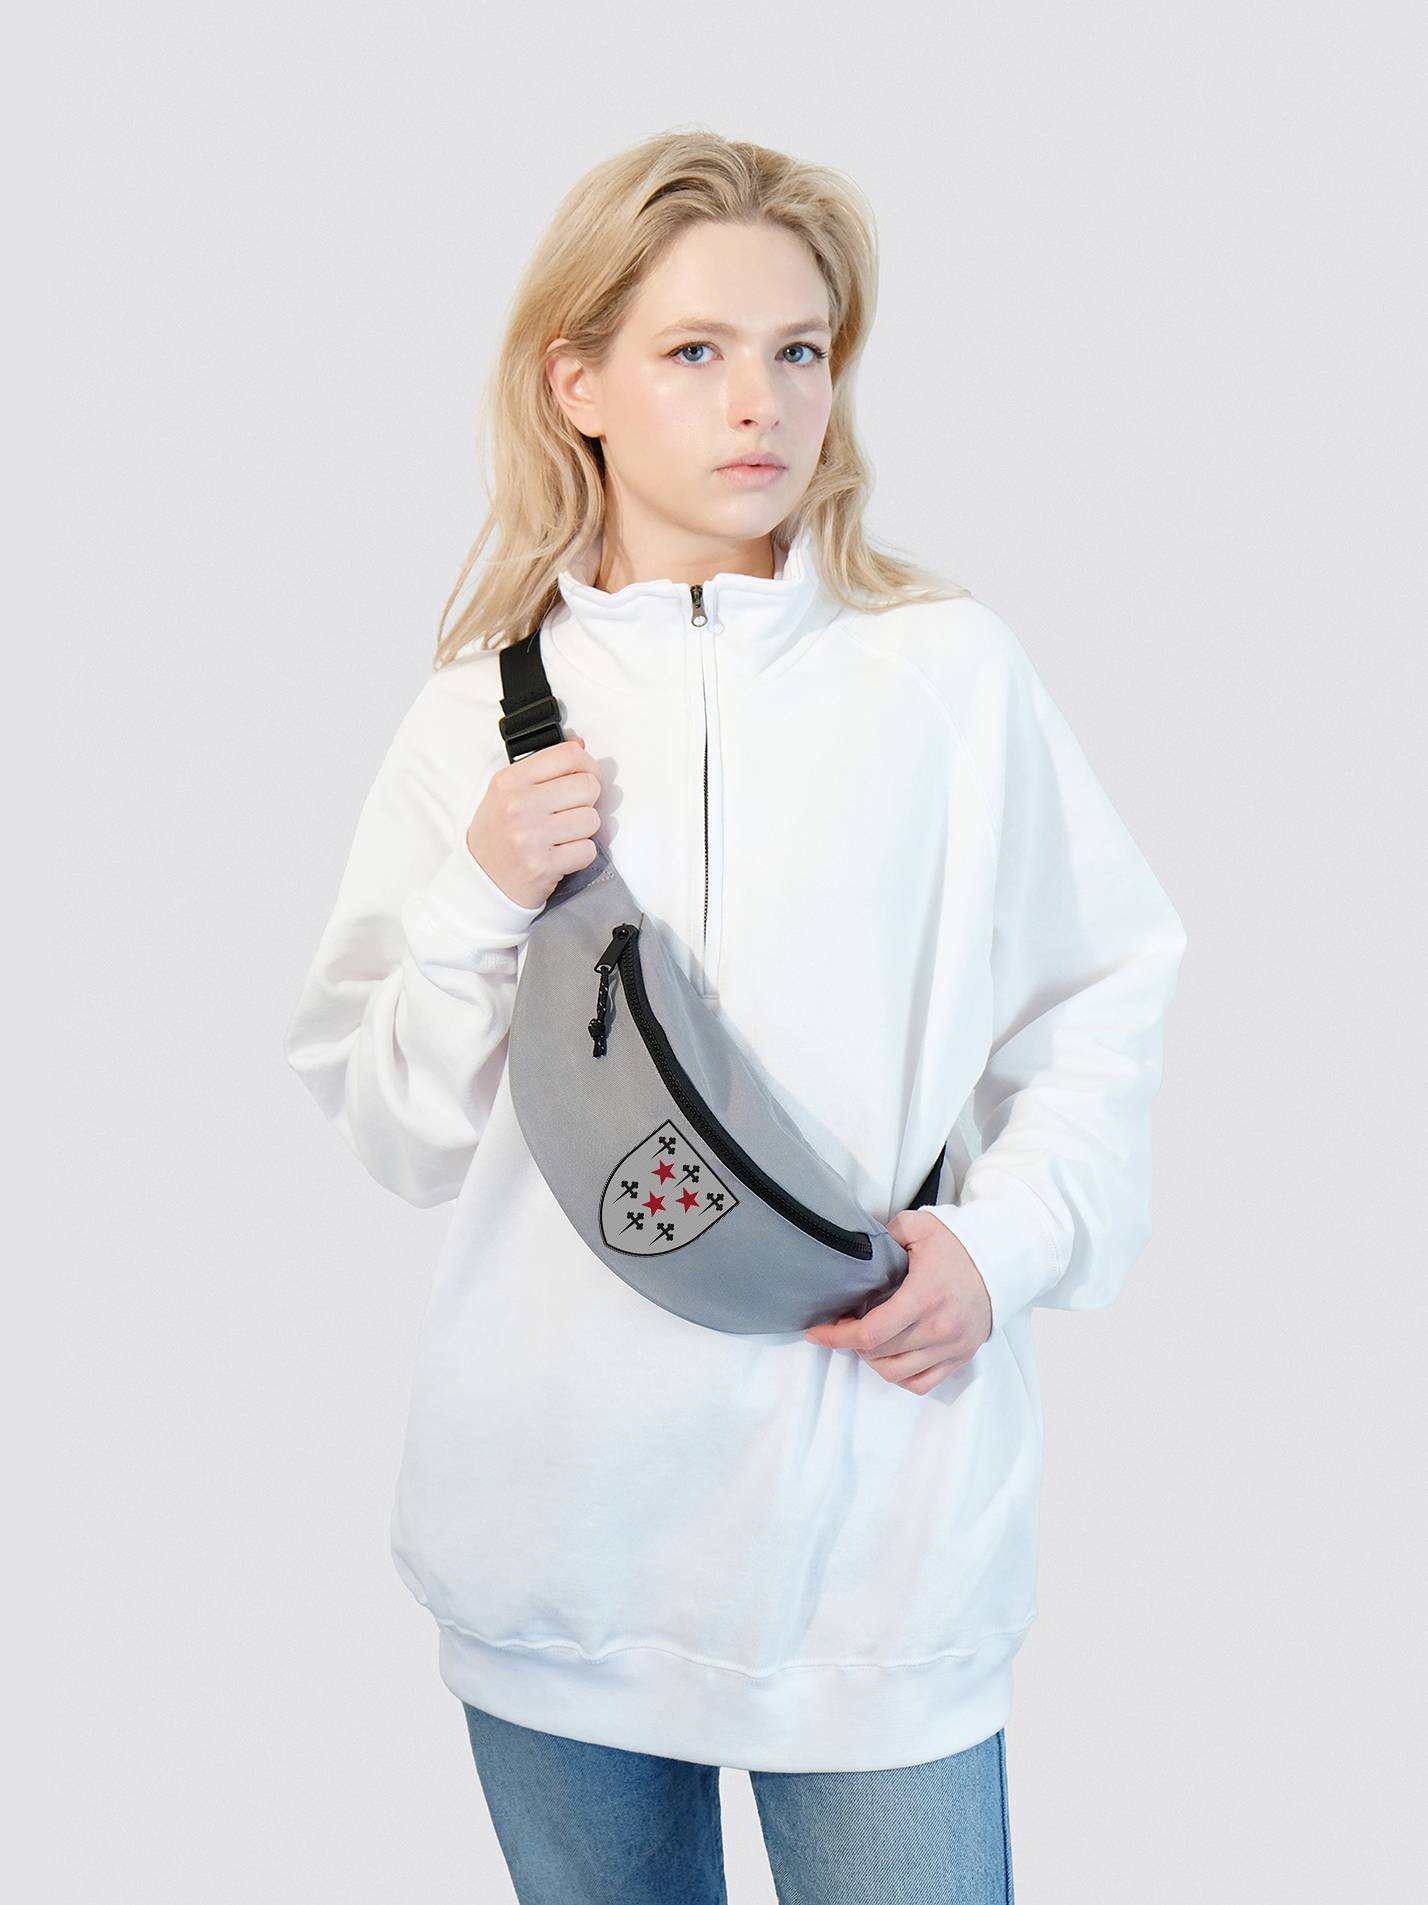 Somerville College Oxford JCR Traditional Crest Essentials Bum Bag